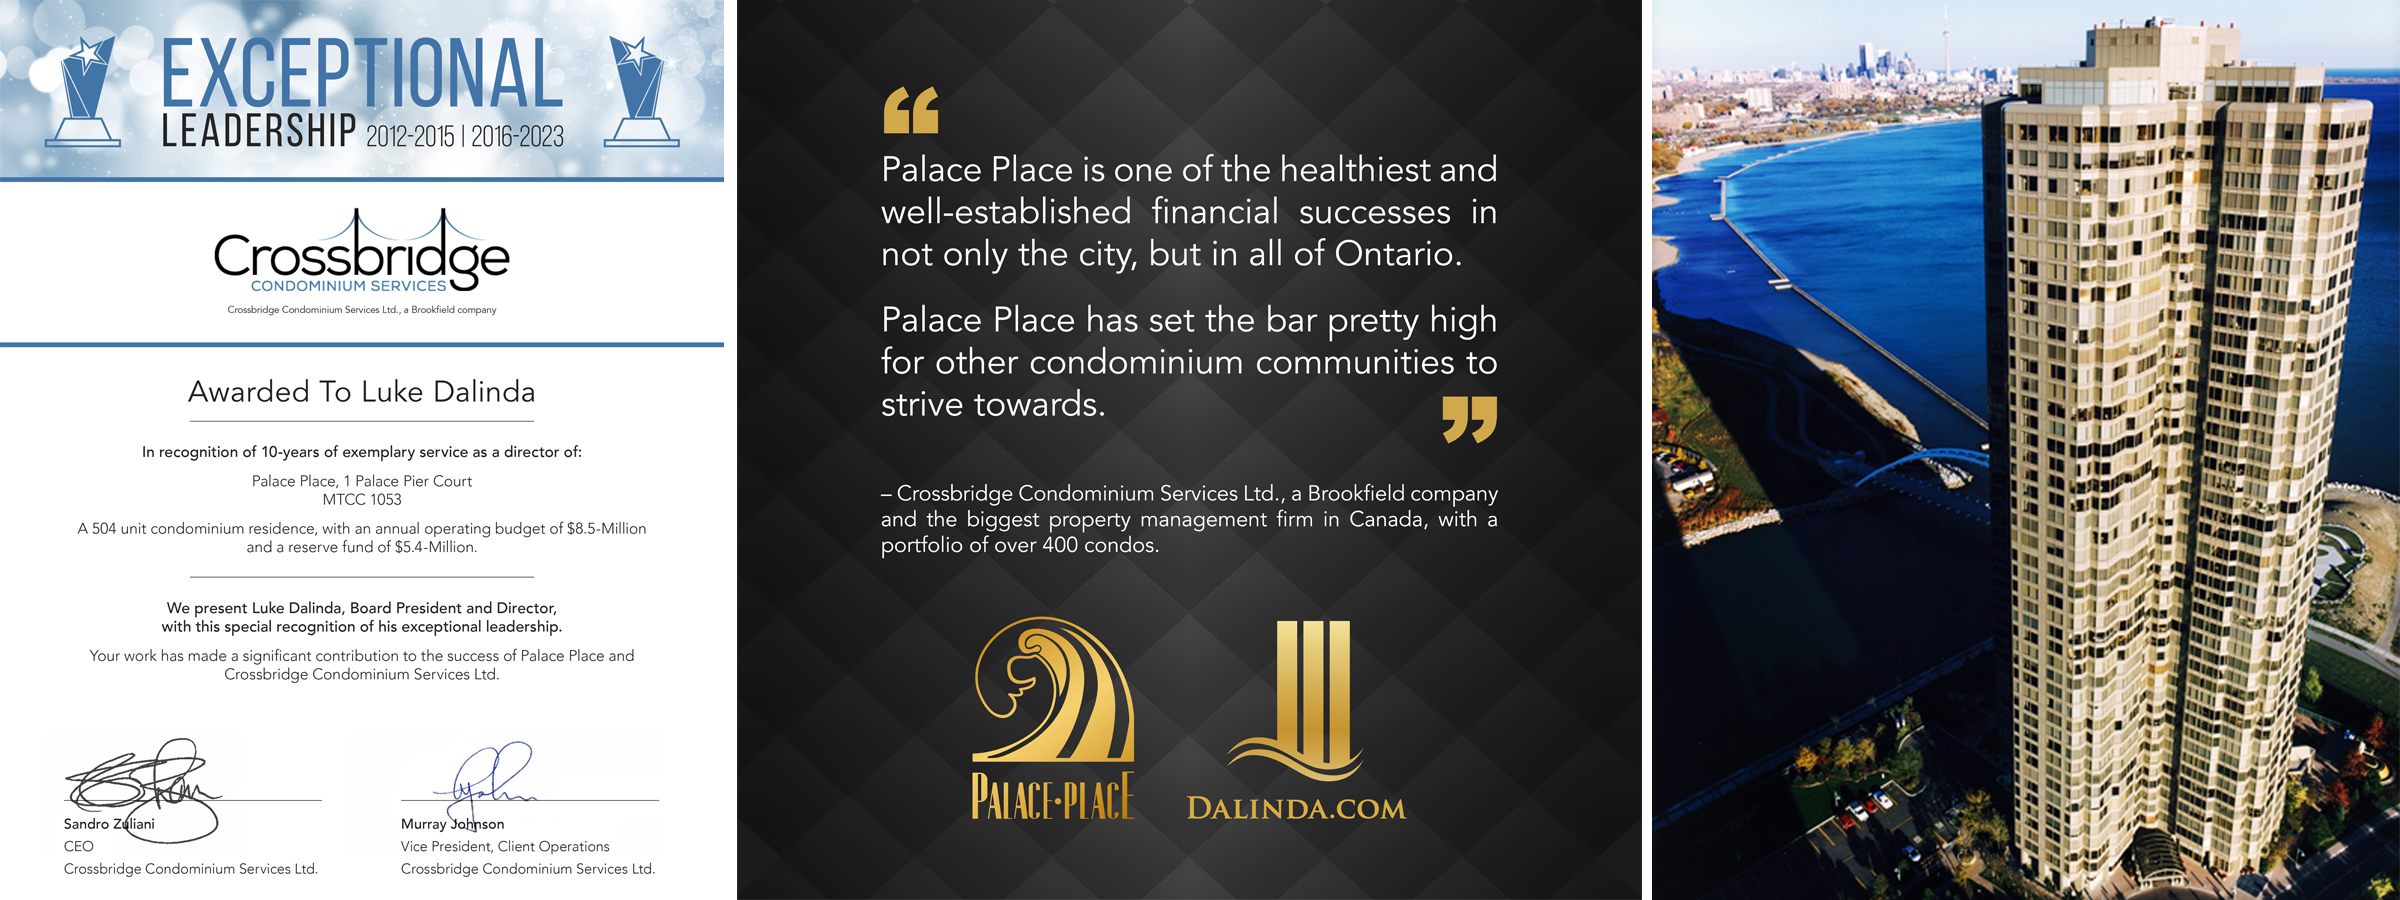 Palace Place